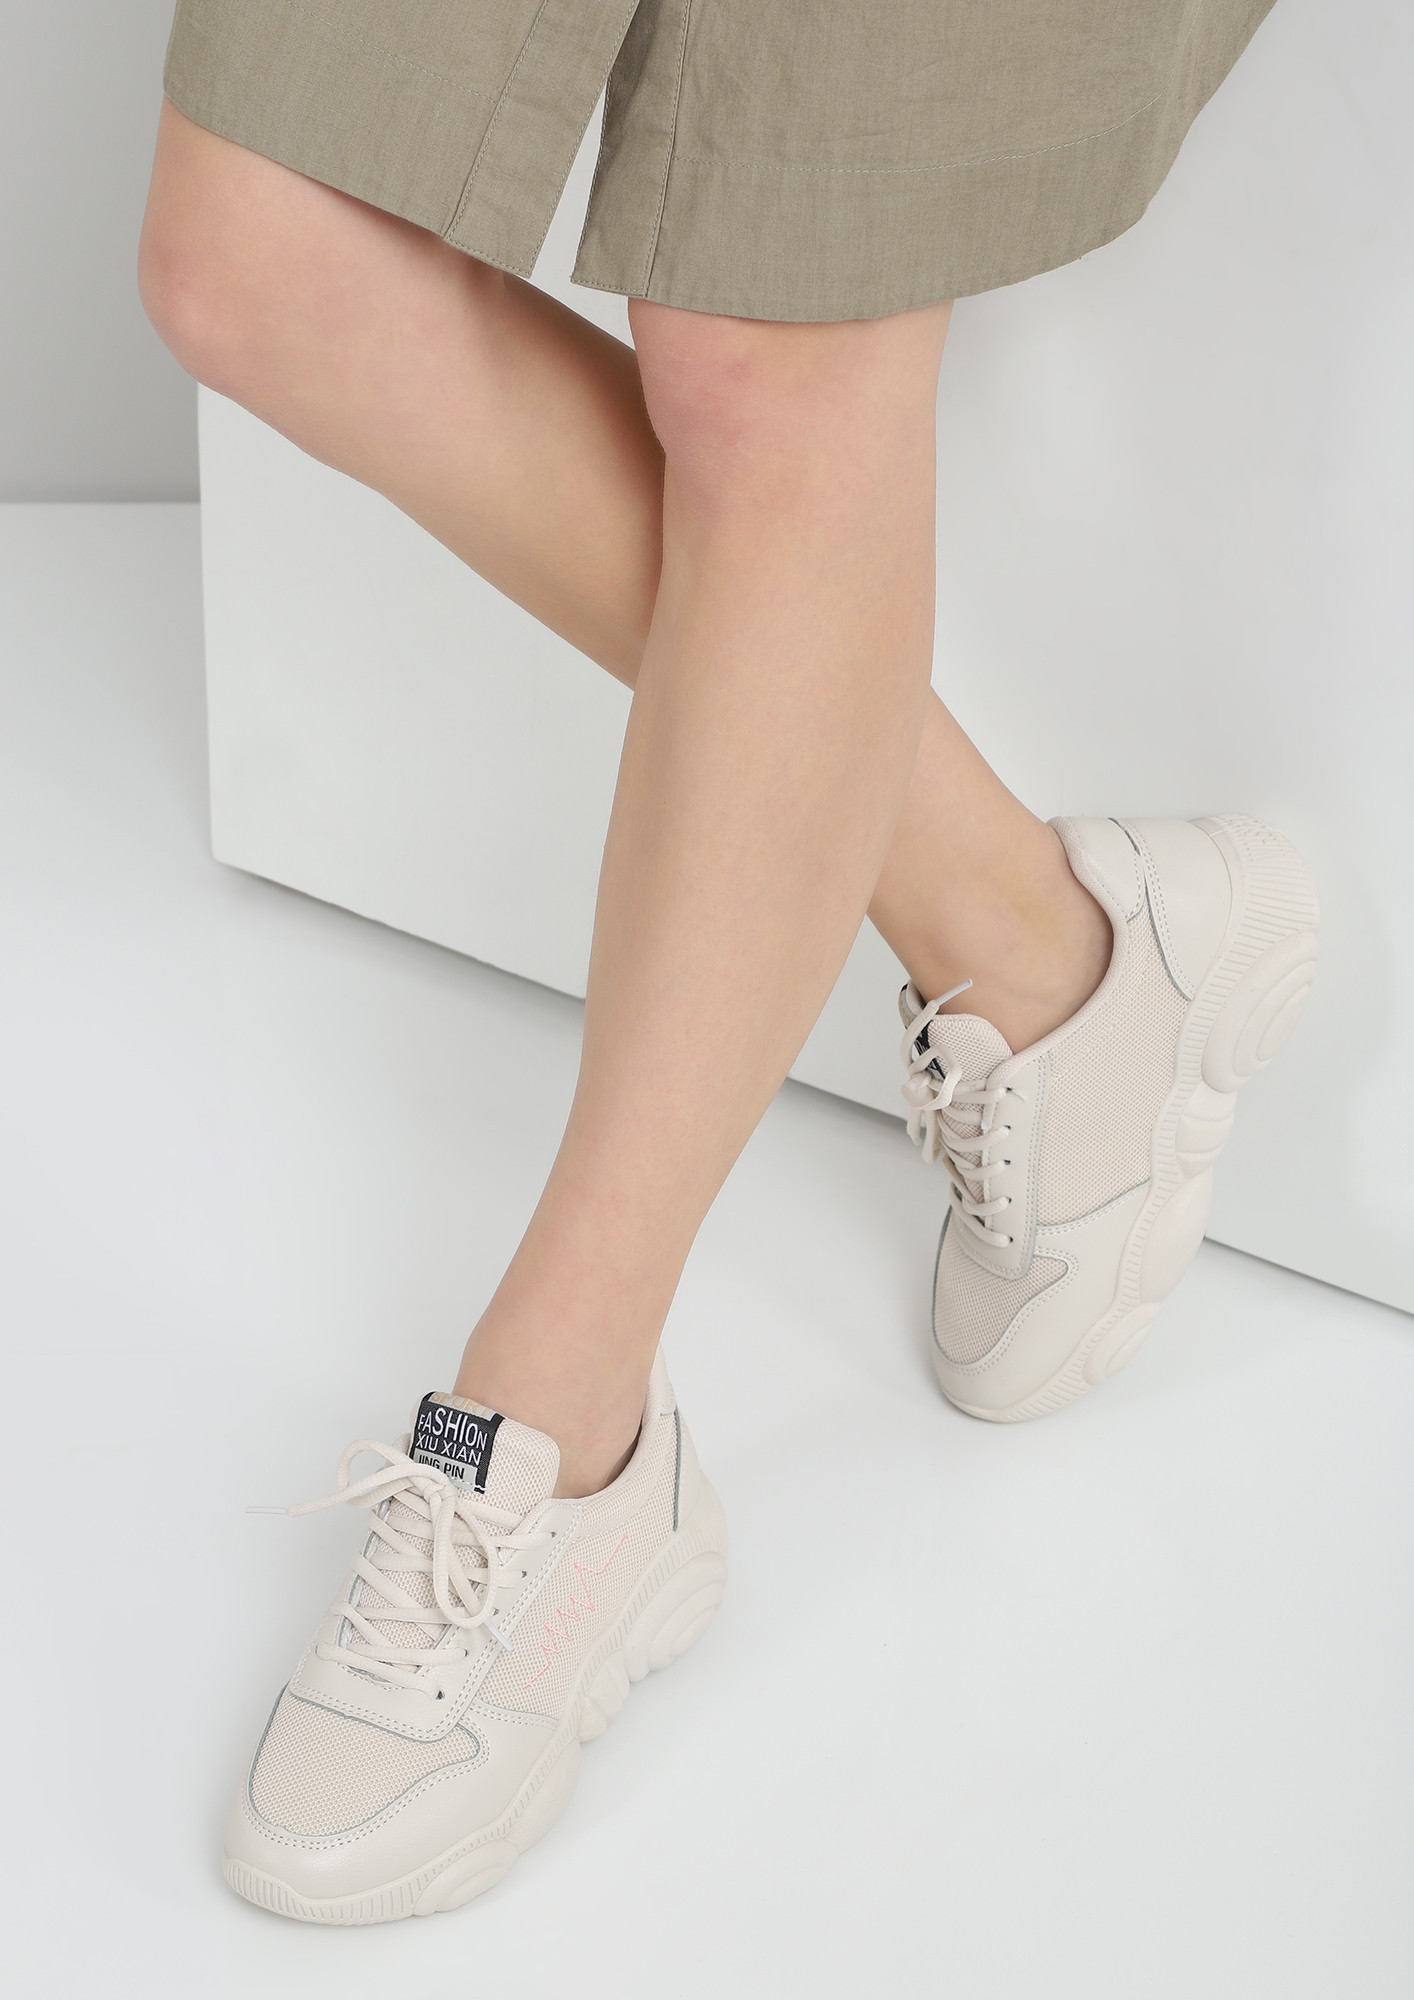 adidas OZWEEGO Shoes - Beige | Women's Lifestyle | adidas US